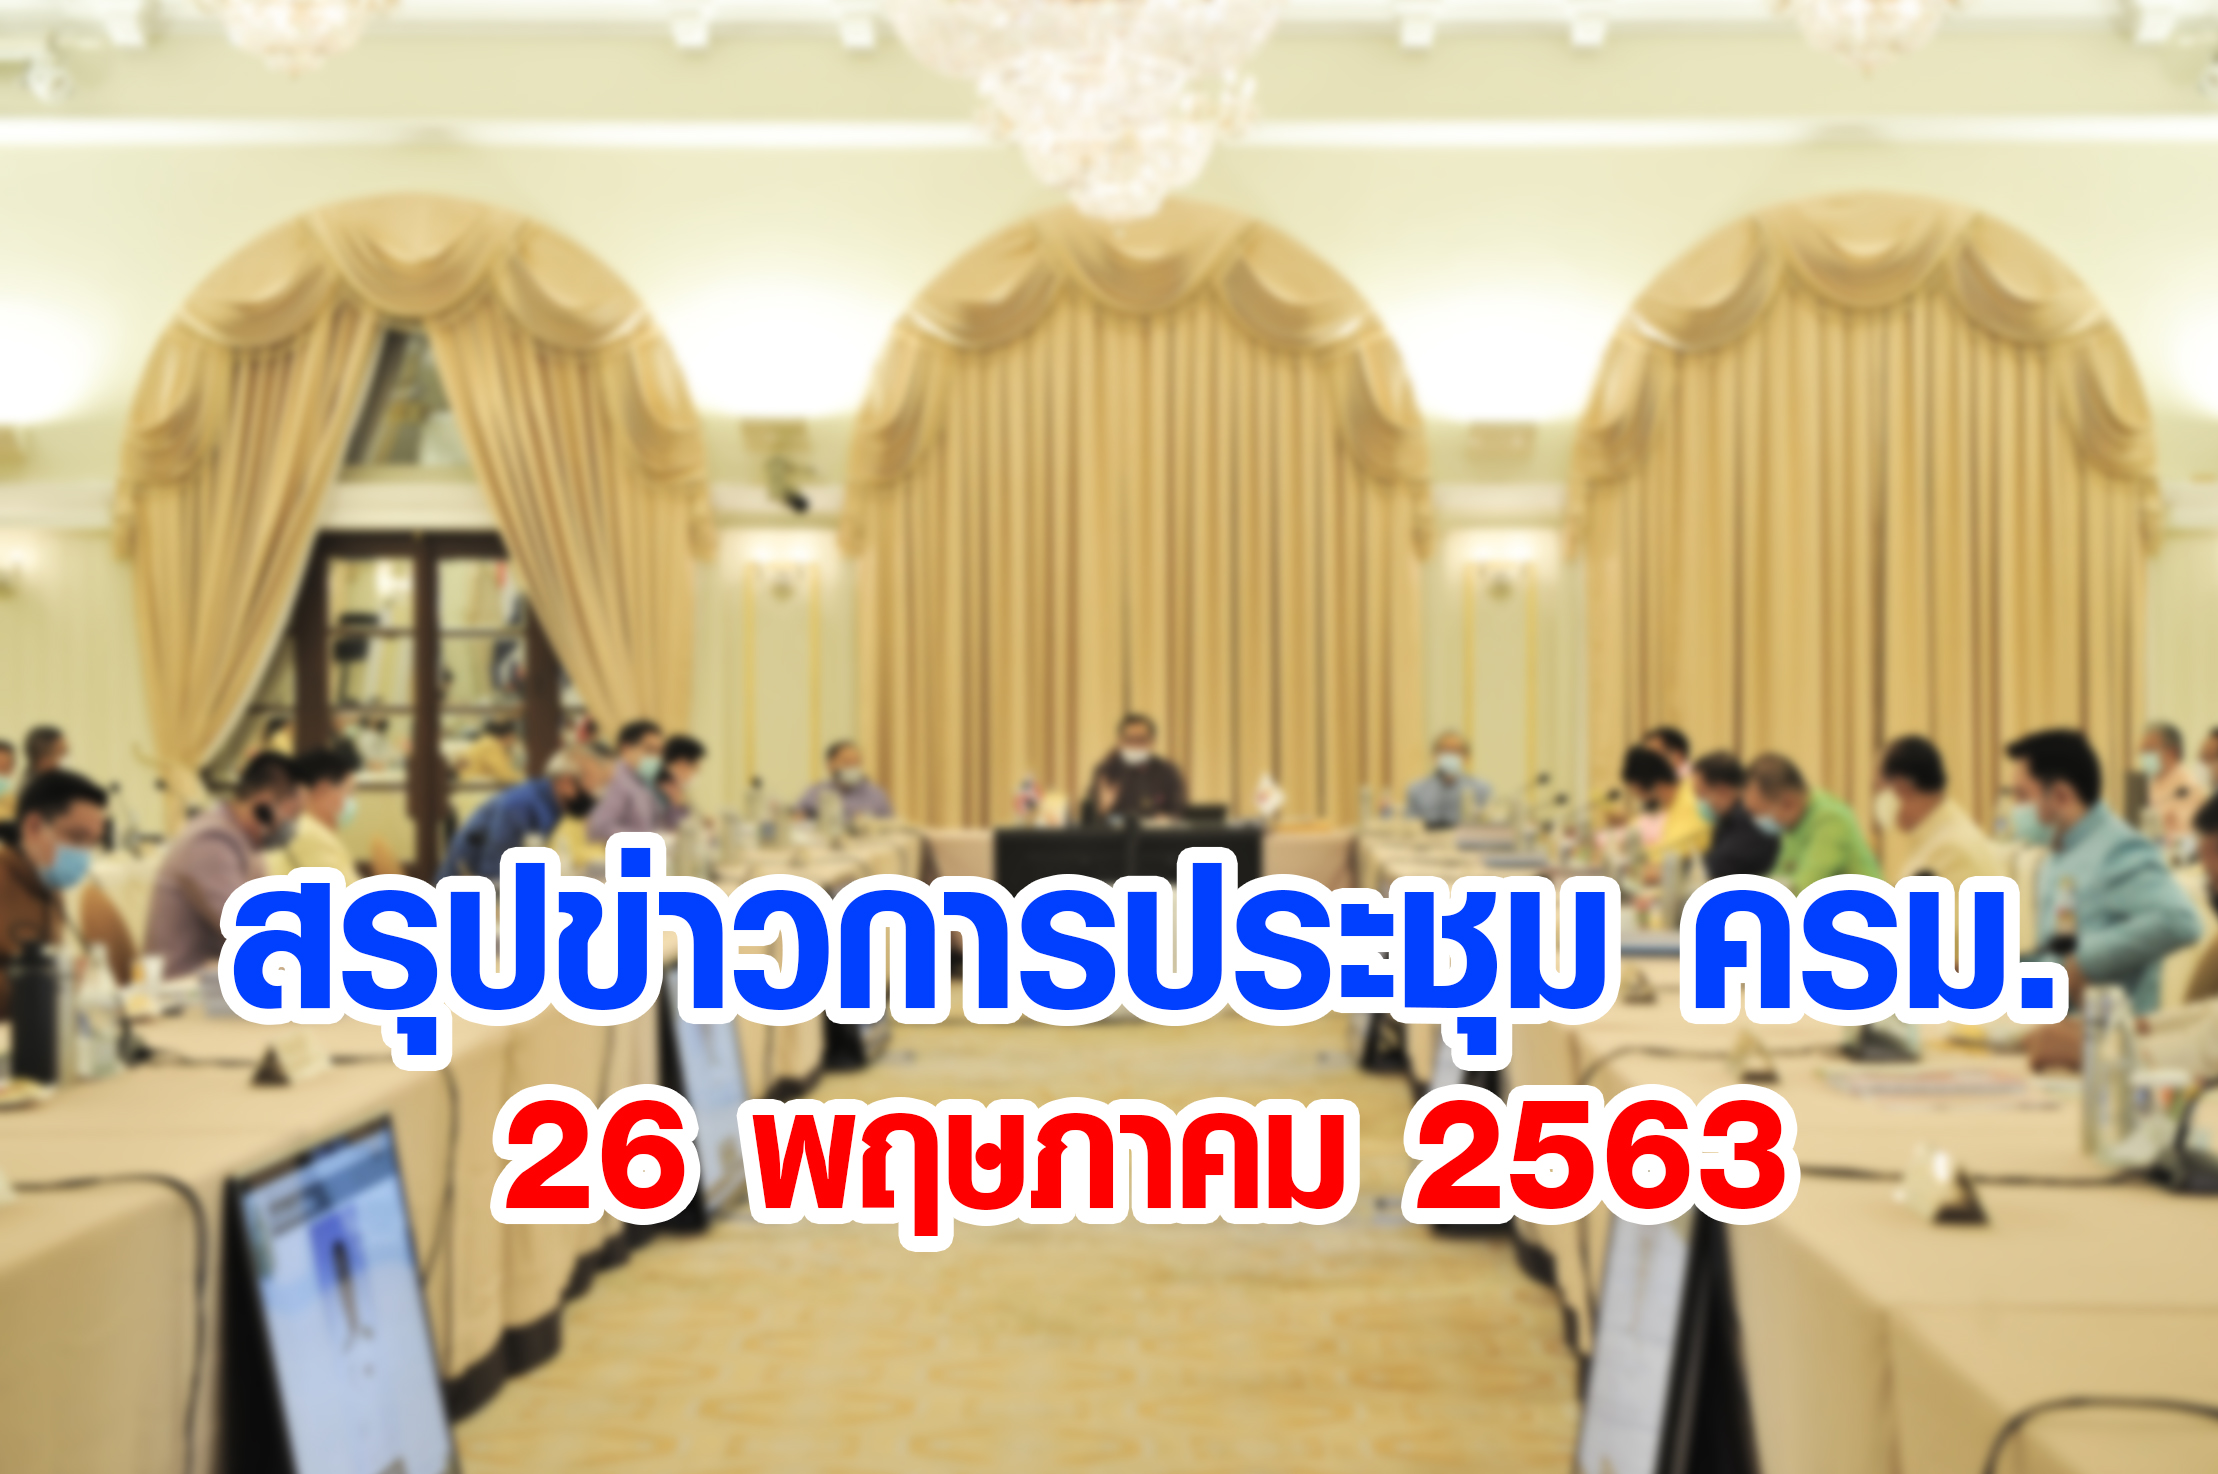 สรุปข่าวการประชุมคณะรัฐมนตรี 26 พ.ค. 2563